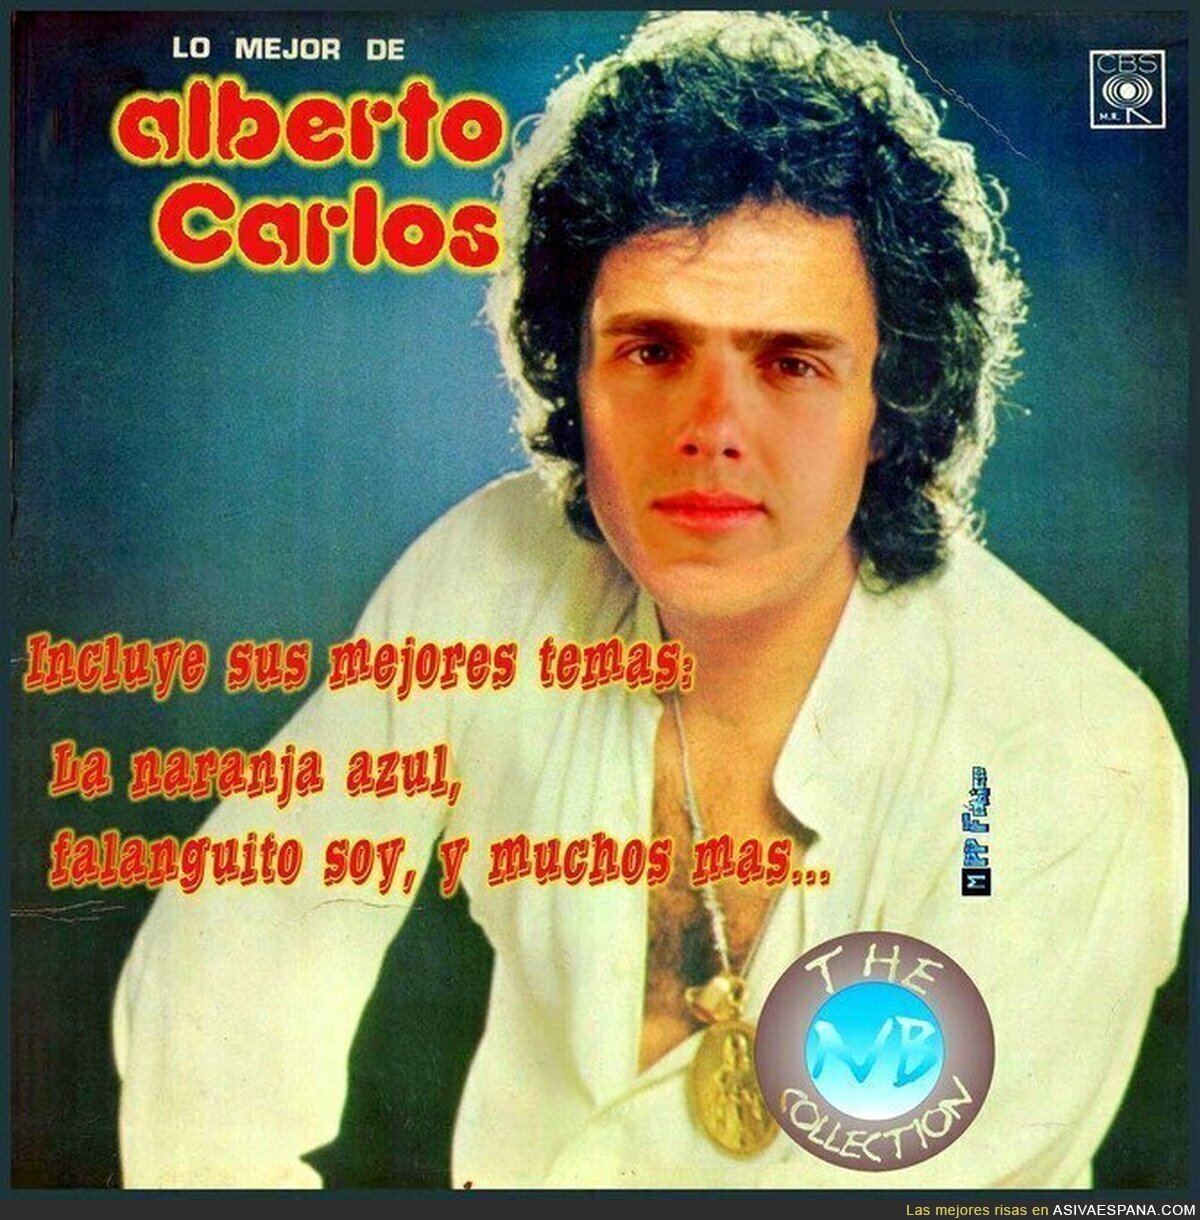 Lo mejor de Alberto Carlos